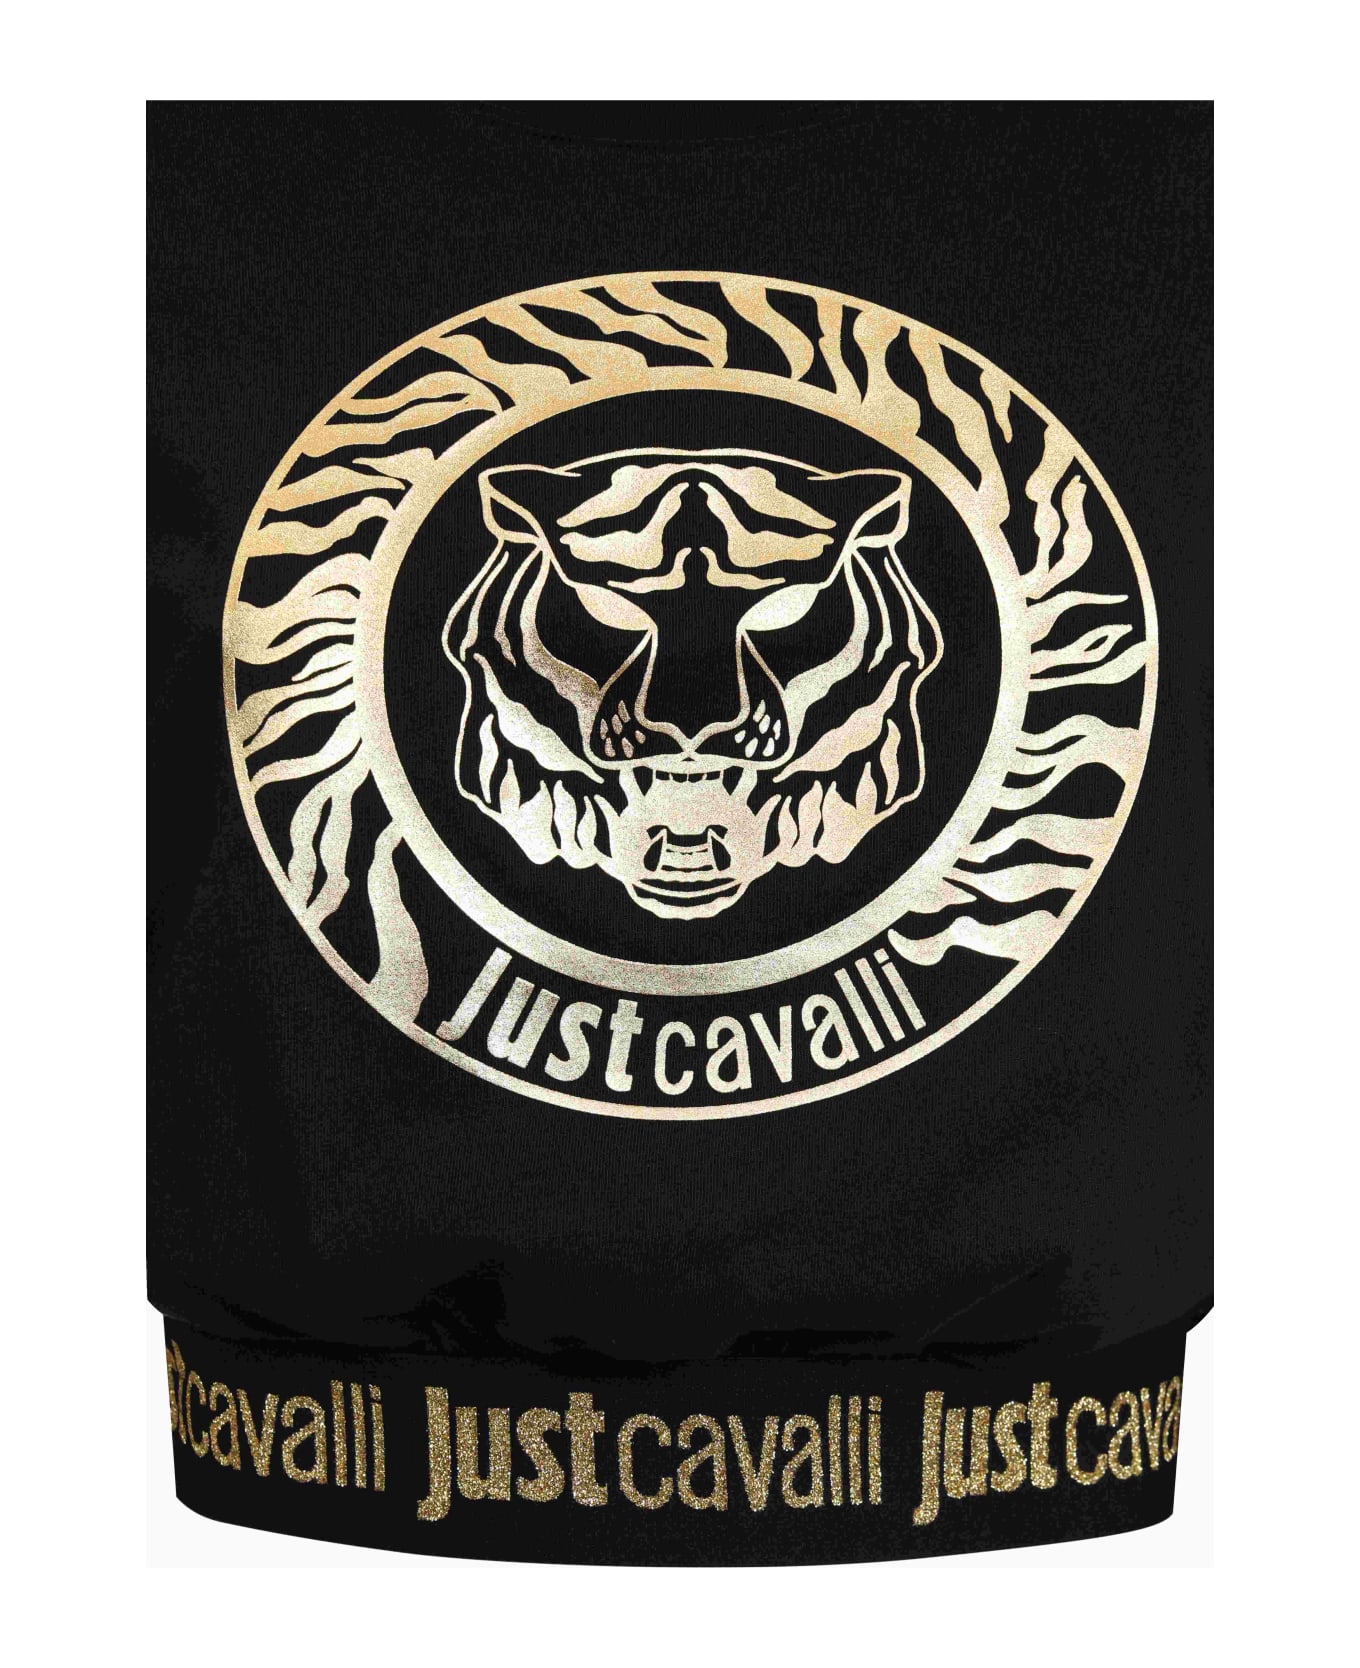 Just Cavalli Women's Crop Top - Black